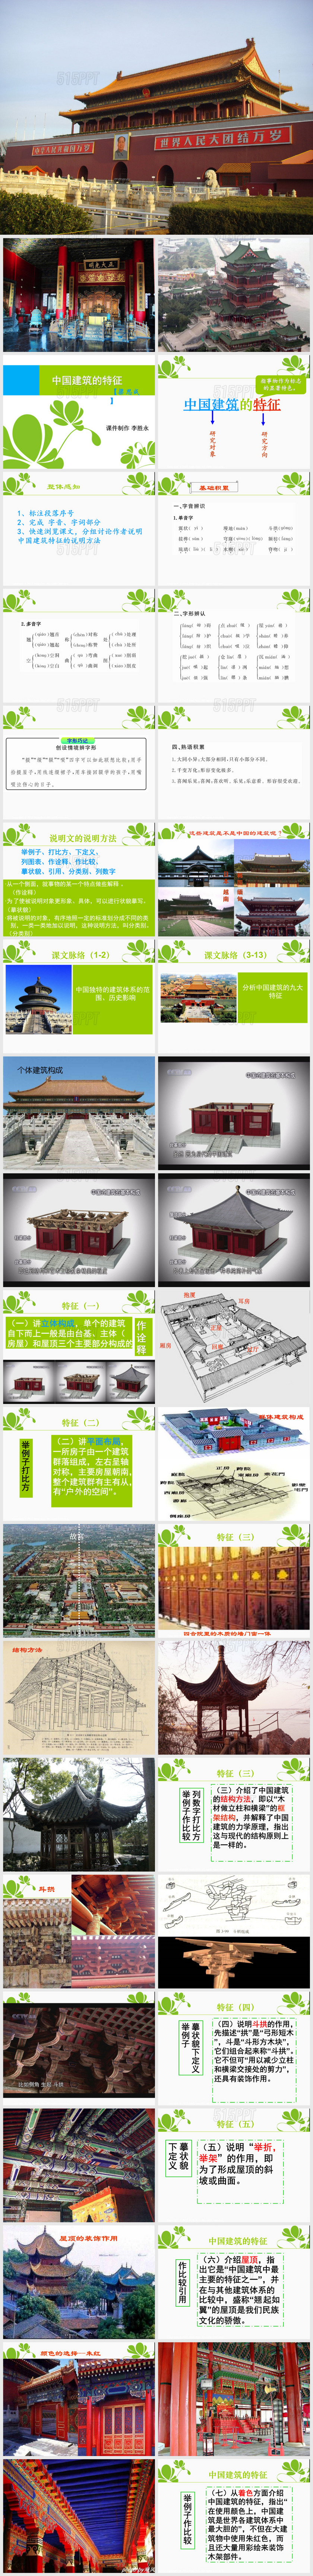 《中国建筑的特征》(最详尽)